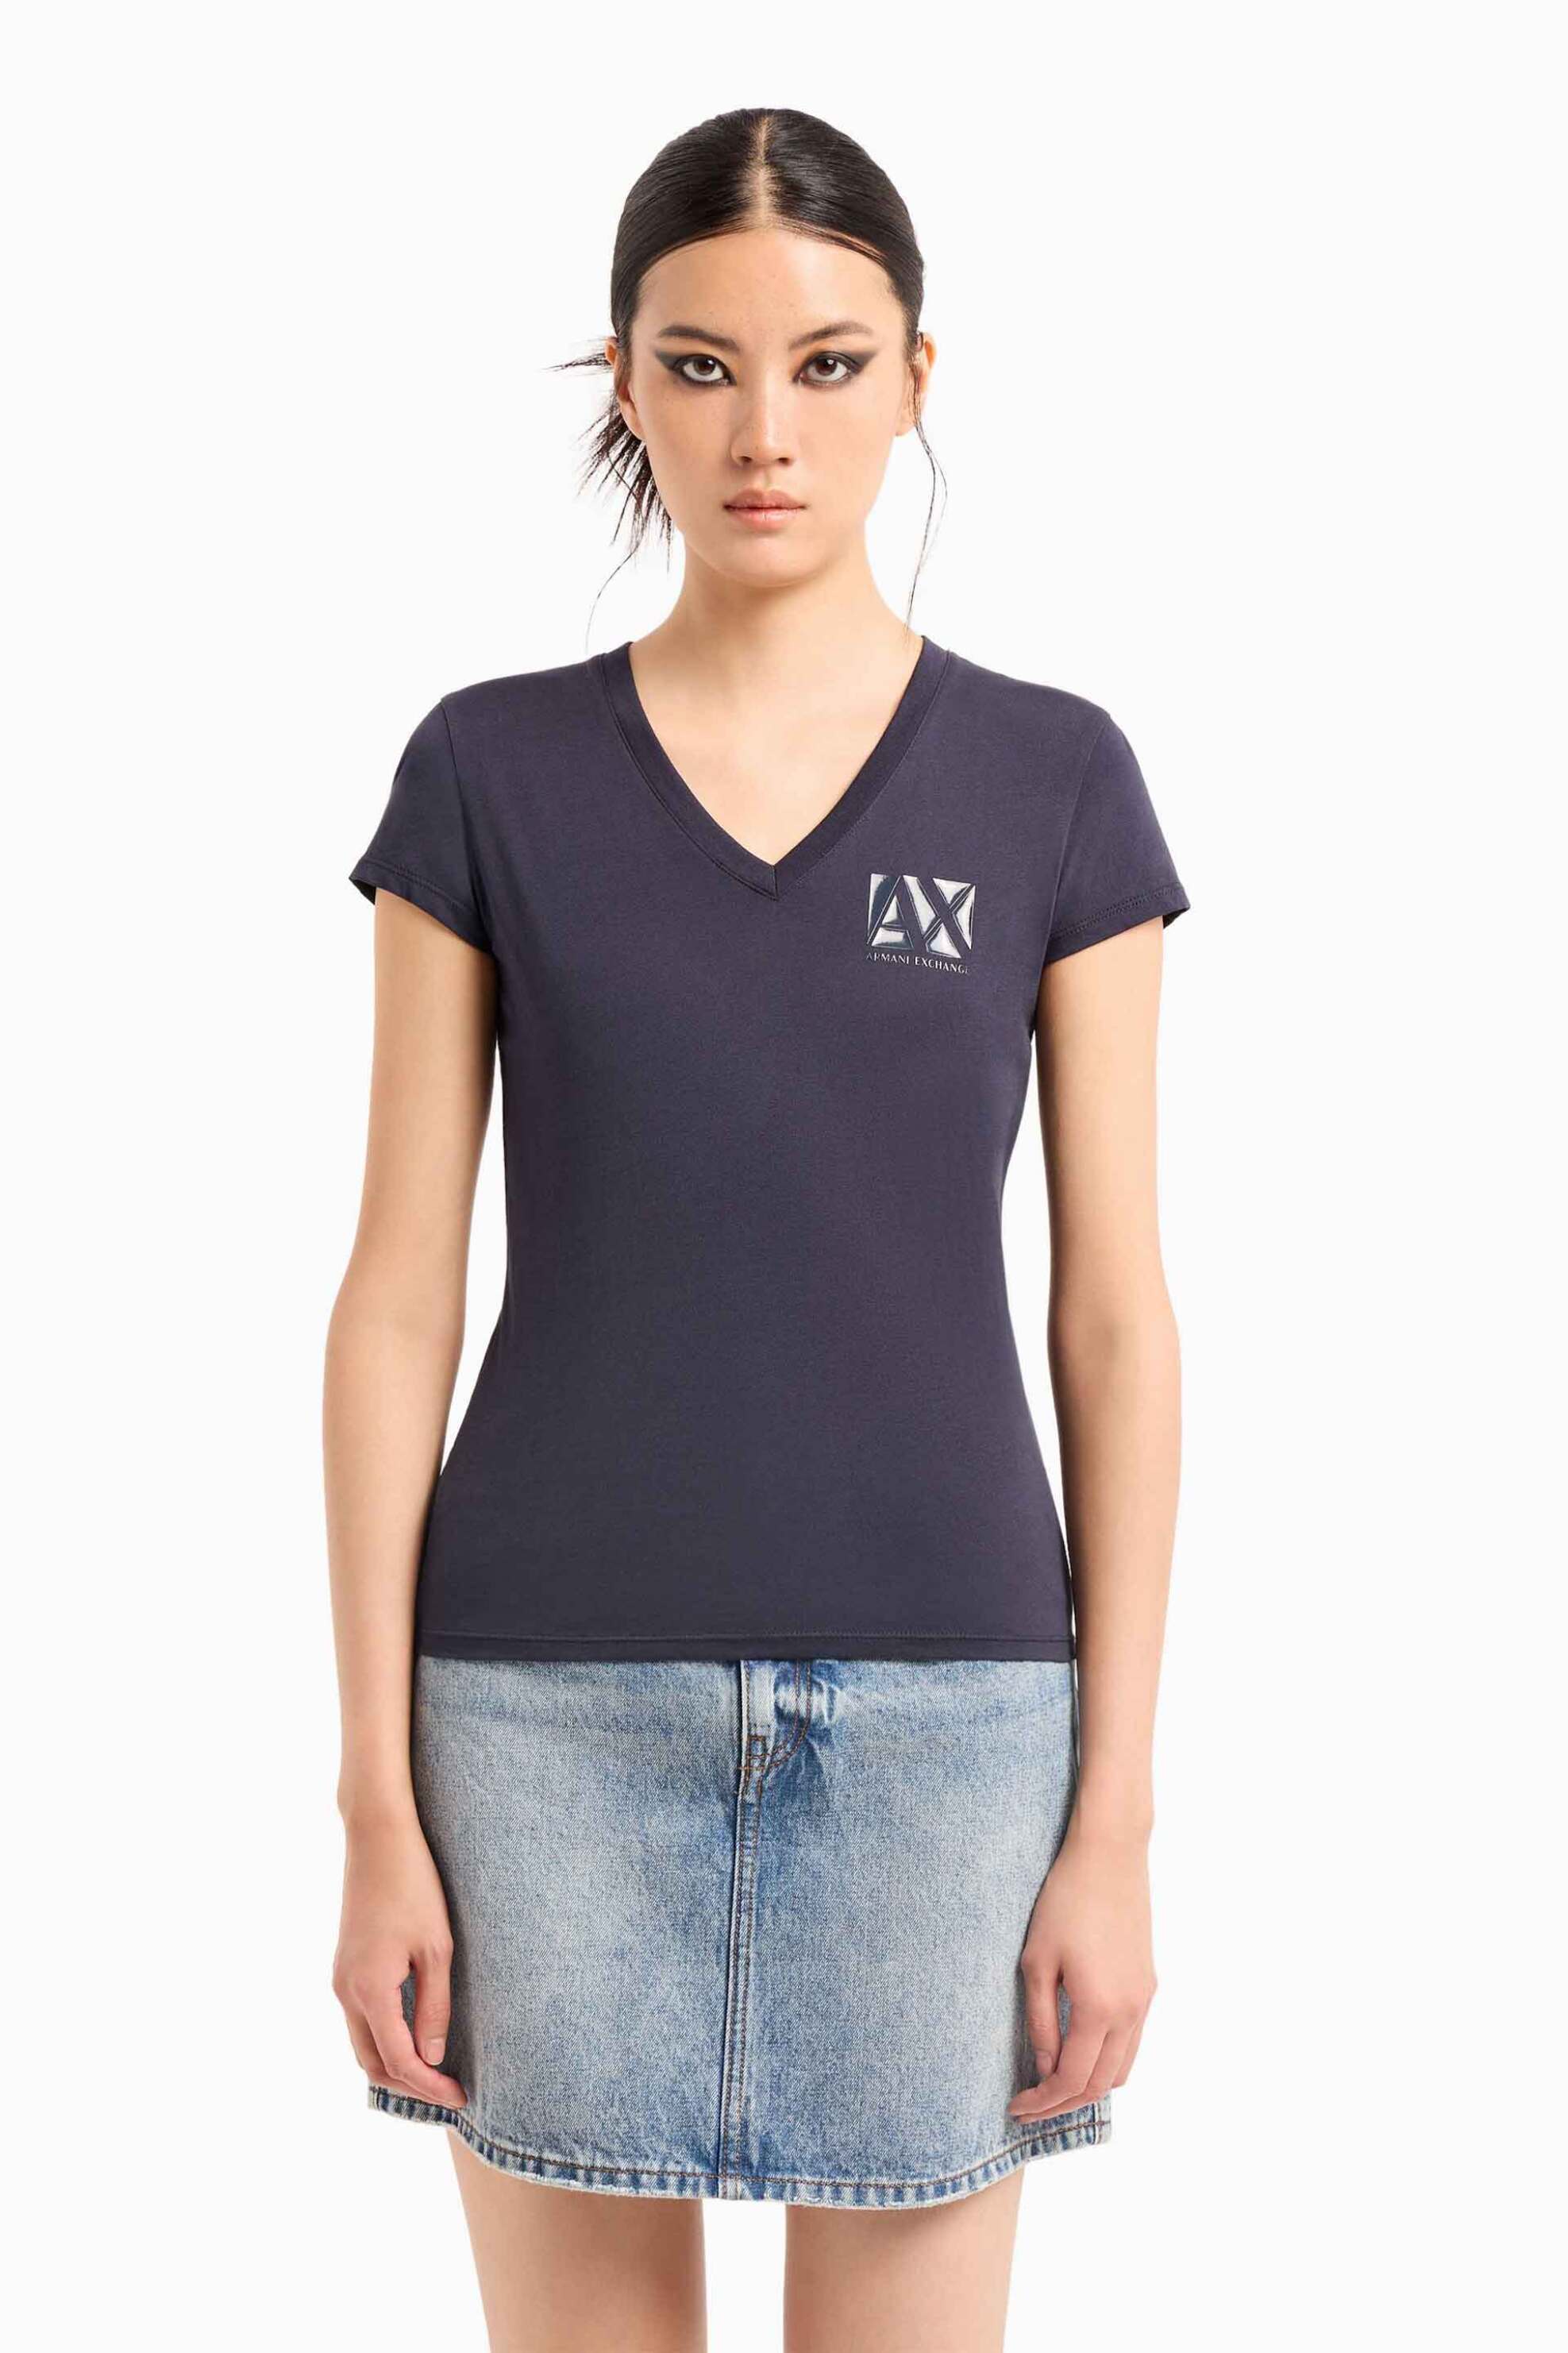 Γυναικεία Ρούχα & Αξεσουάρ > Γυναικεία Ρούχα > Γυναικεία Τοπ > Γυναικεία T-Shirts Armani Exchange γυναικείο T-shirt βαμβακερό μονόχρωμο με ανάγλυφο μονόγραμμα και λογότυπο - 3DYT03YJ3RZ Σκούρο Μπλε